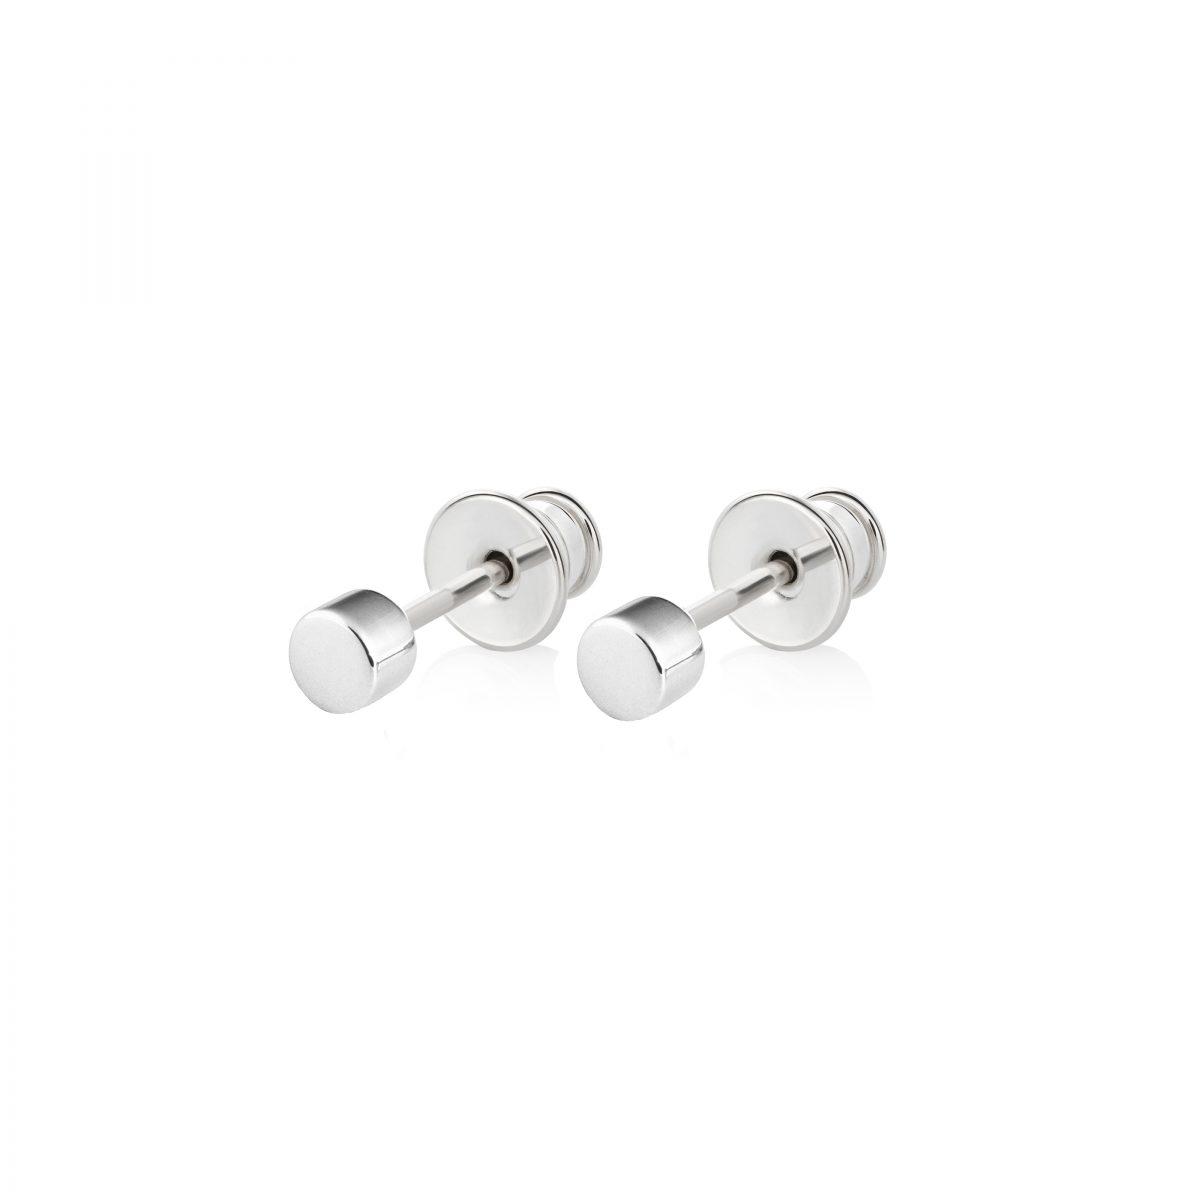 Samojauskaite_Regular Dot Earrings Silver